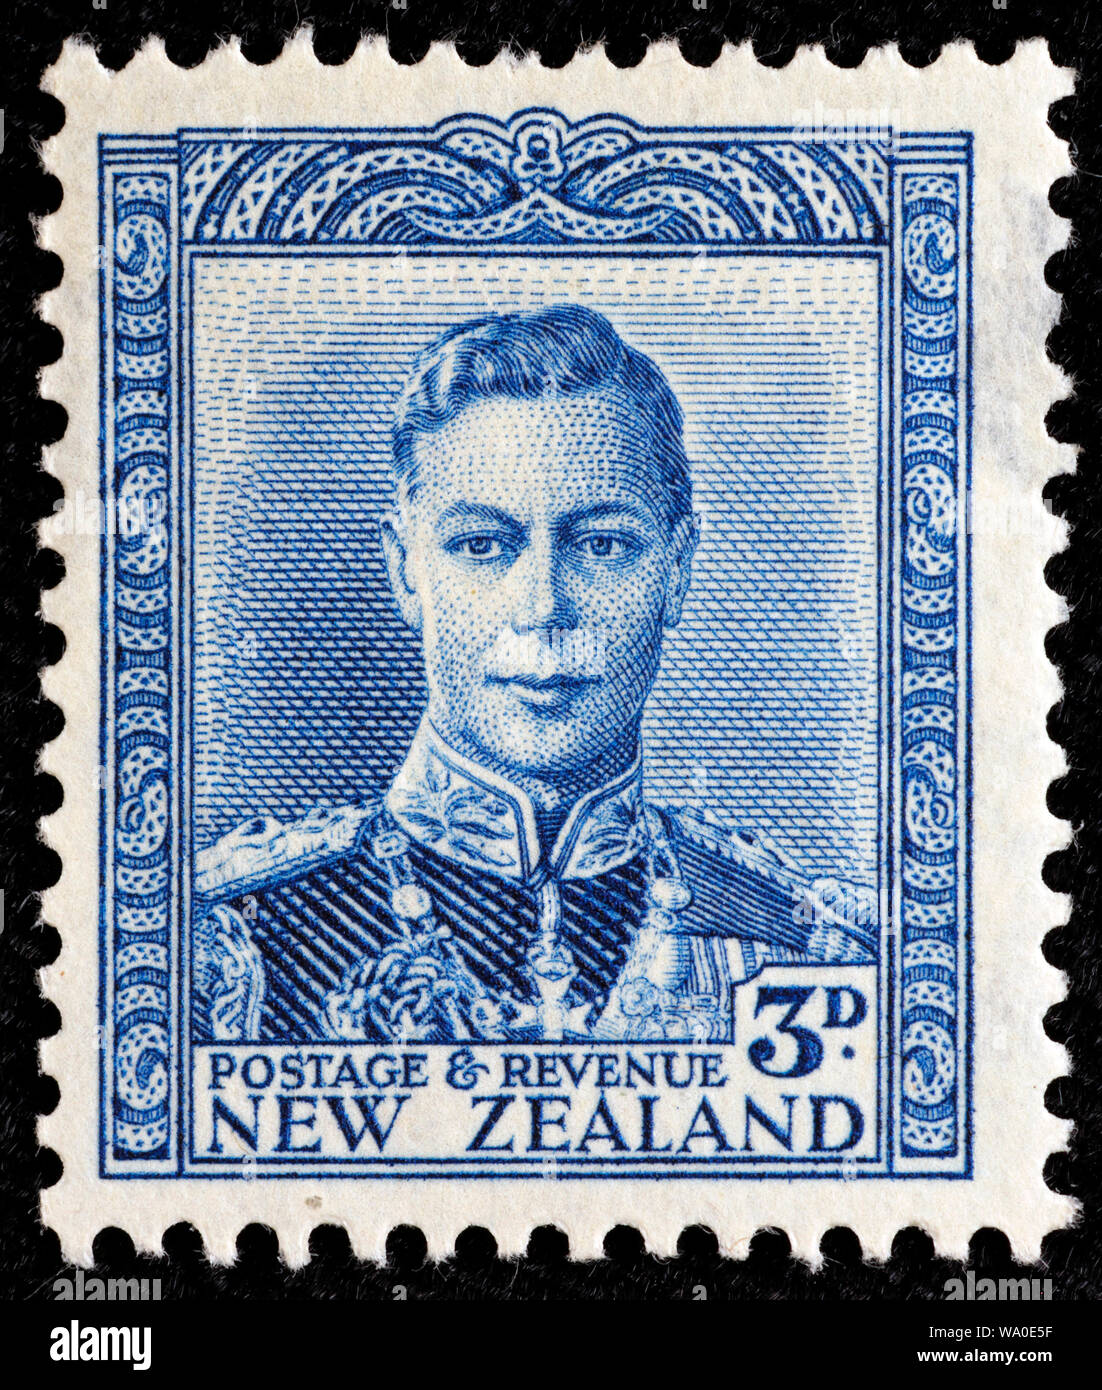 Le roi George VI (1936-1952), timbre-poste, Nouvelle-Zélande, 1941 Banque D'Images